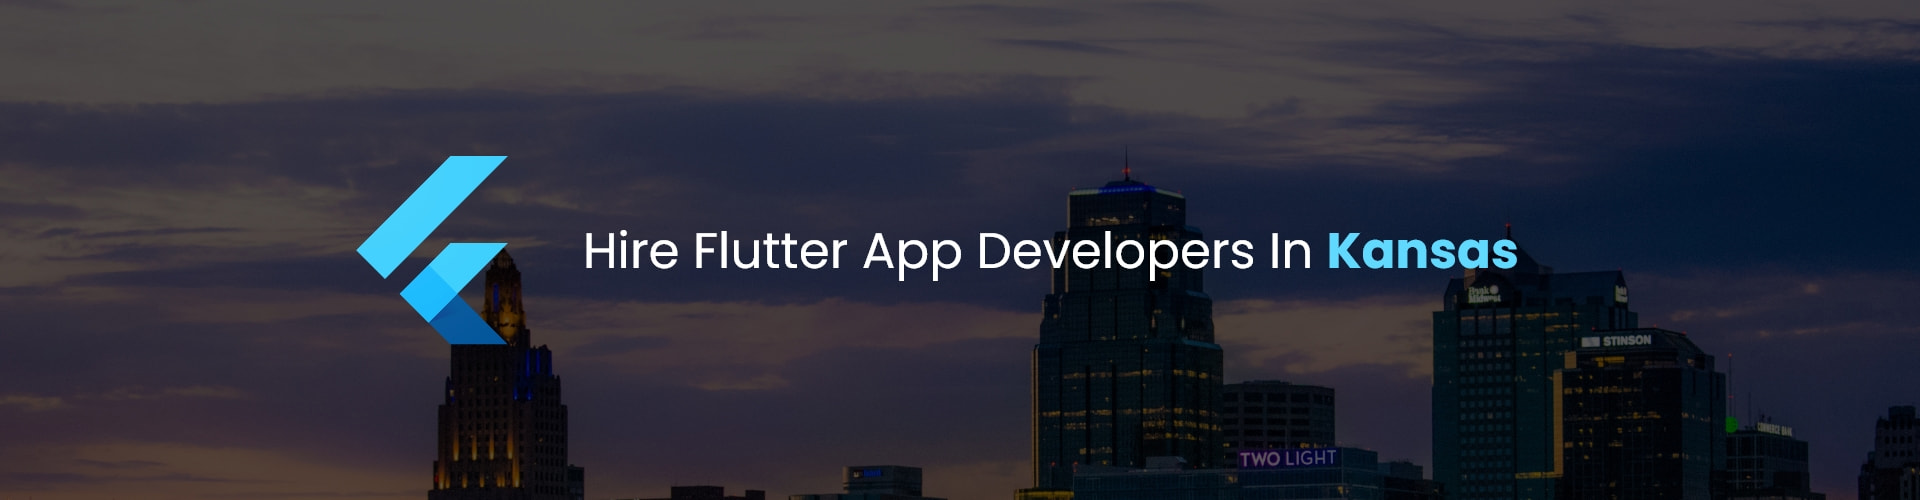 flutter app developers in kansas 